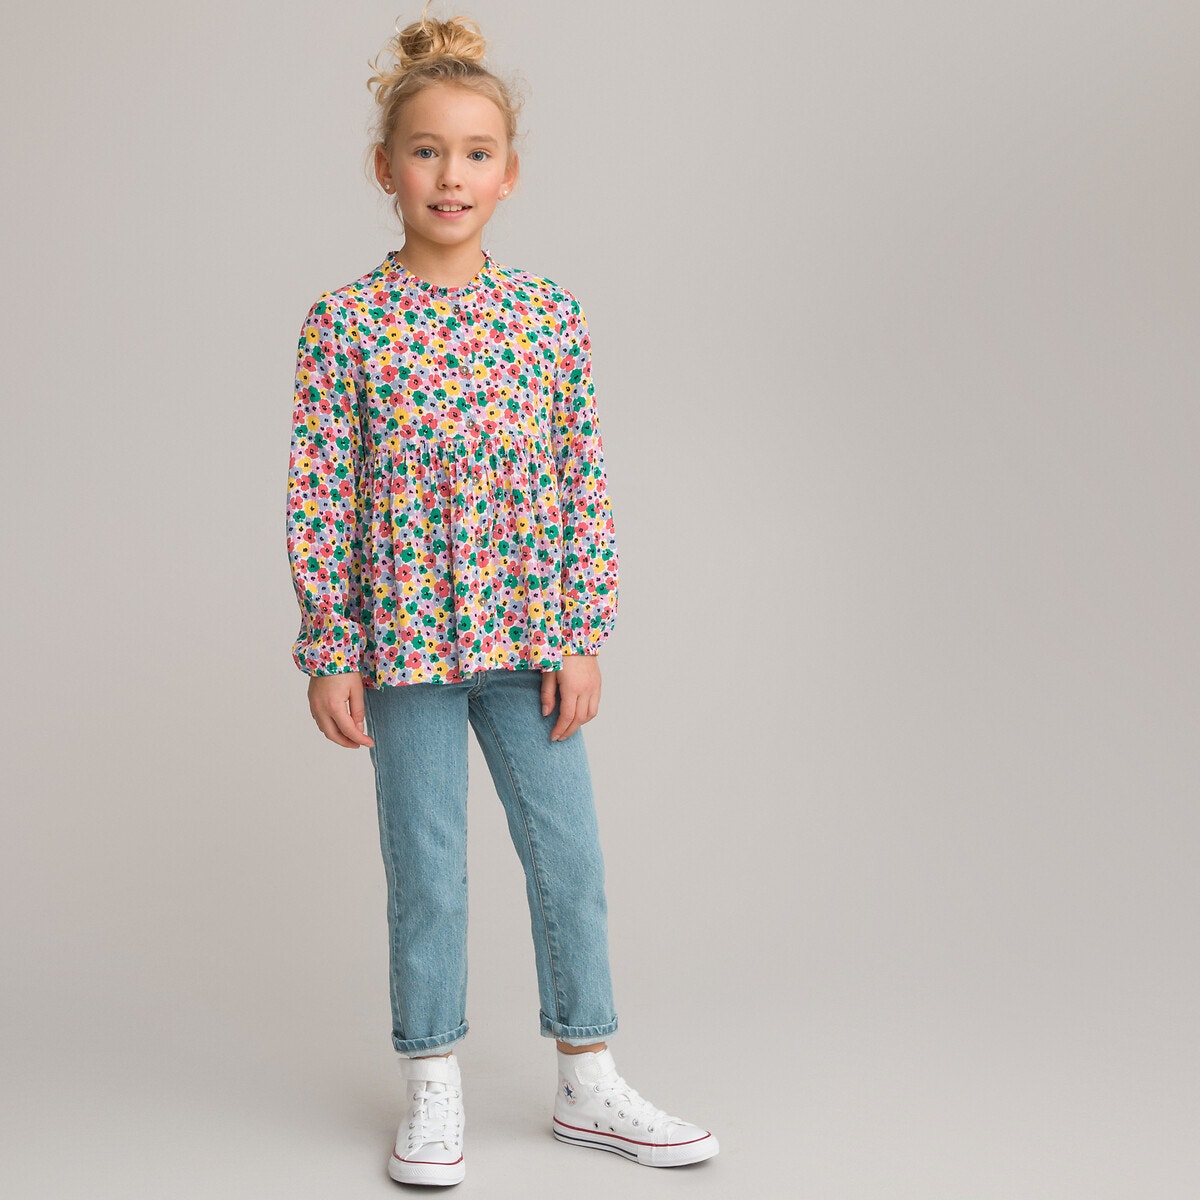 Μόδα > Παιδικά > Κορίτσι > Μπλούζες, πουκάμισα Μακρυμάνικο χυτό πουκάμισο με φλοράλ μοτίβο